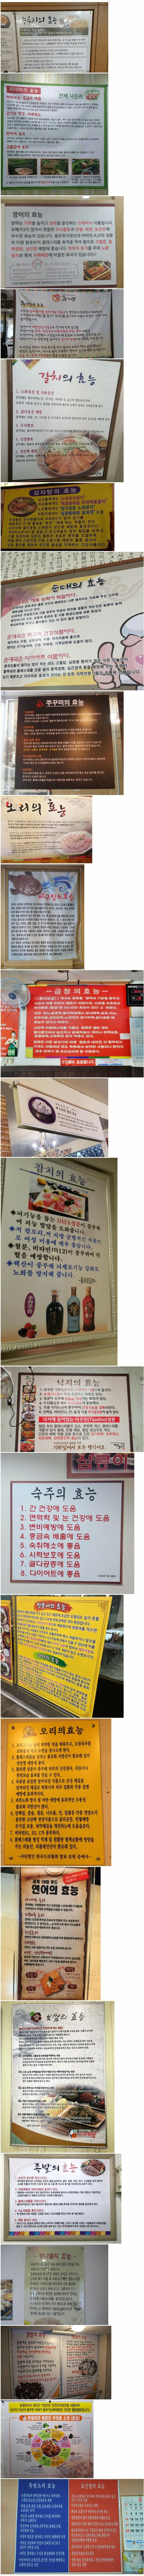 몇몇 한국 식당들 공통점